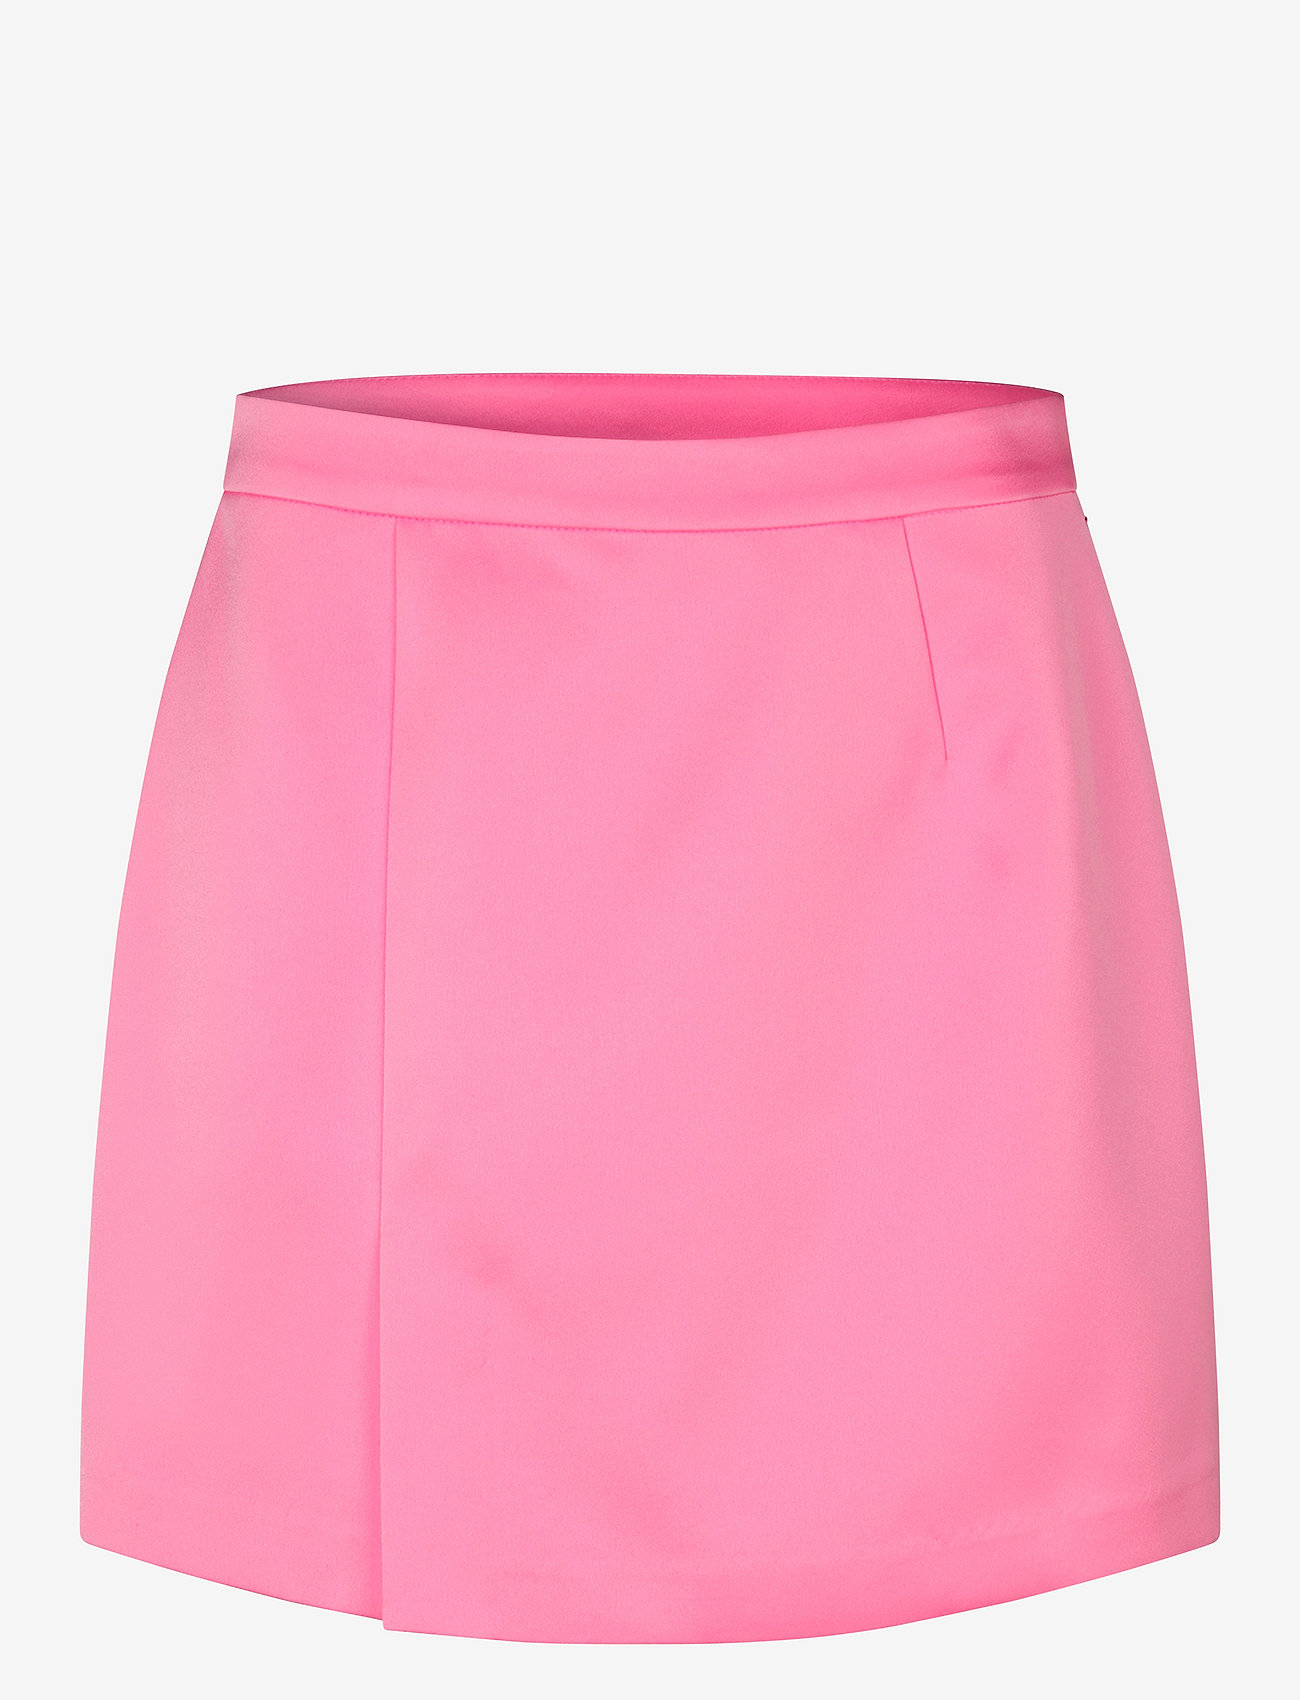 Cras - Samycras Skirt - kort skjørt - pink 933c - 0